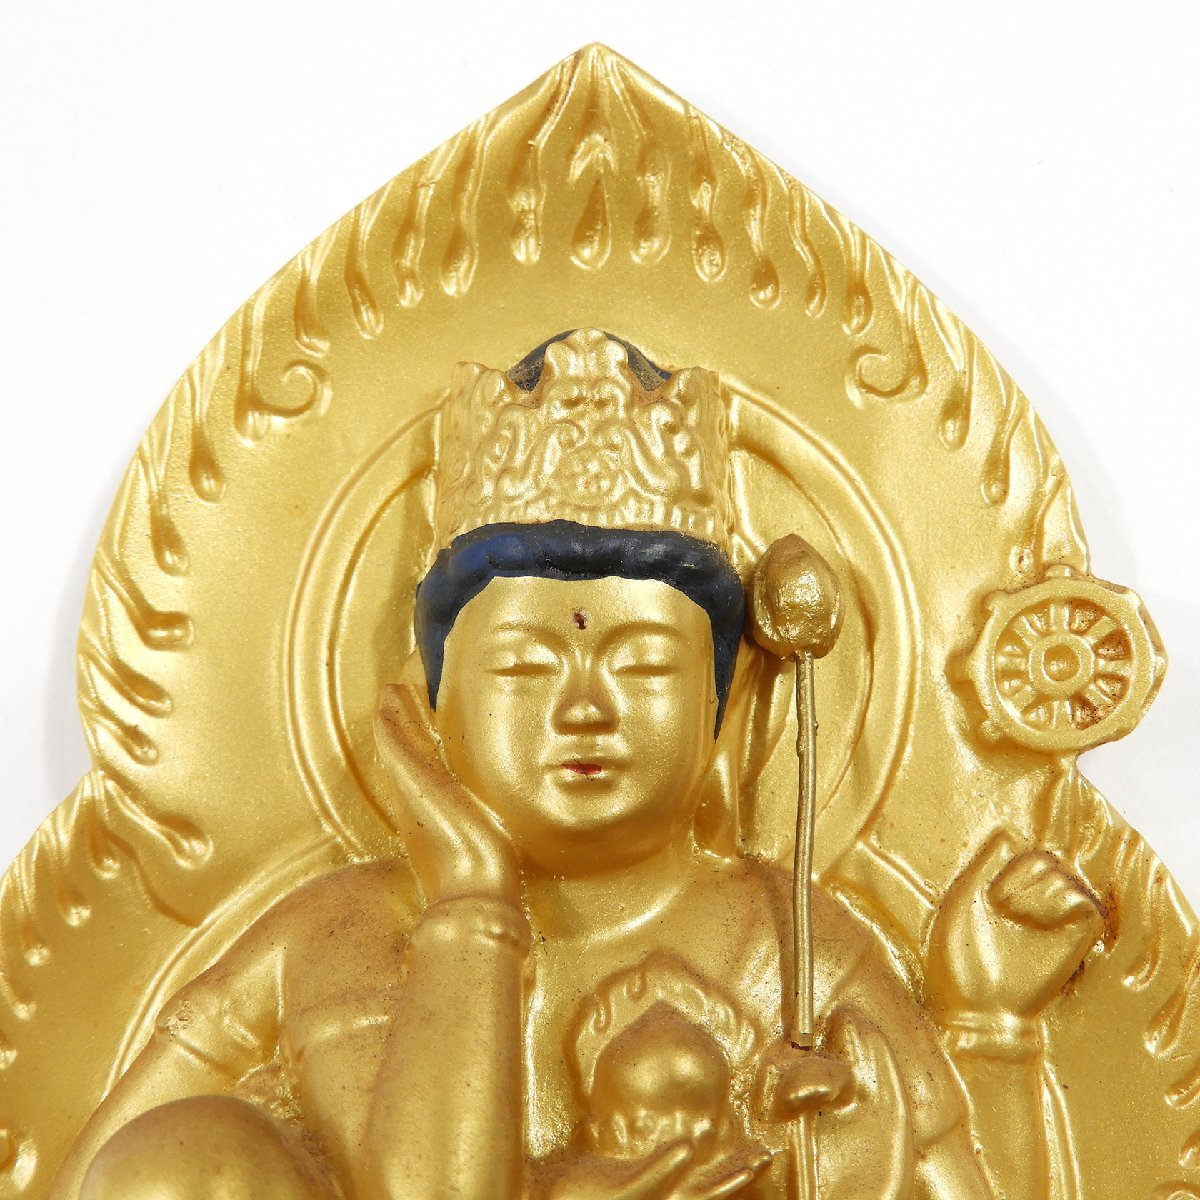 阿含宗 如意輪観音 #14388 仏具 仏教美術 年代物 昭和 レトロ 聖如意輪観自在菩薩御尊像_画像4